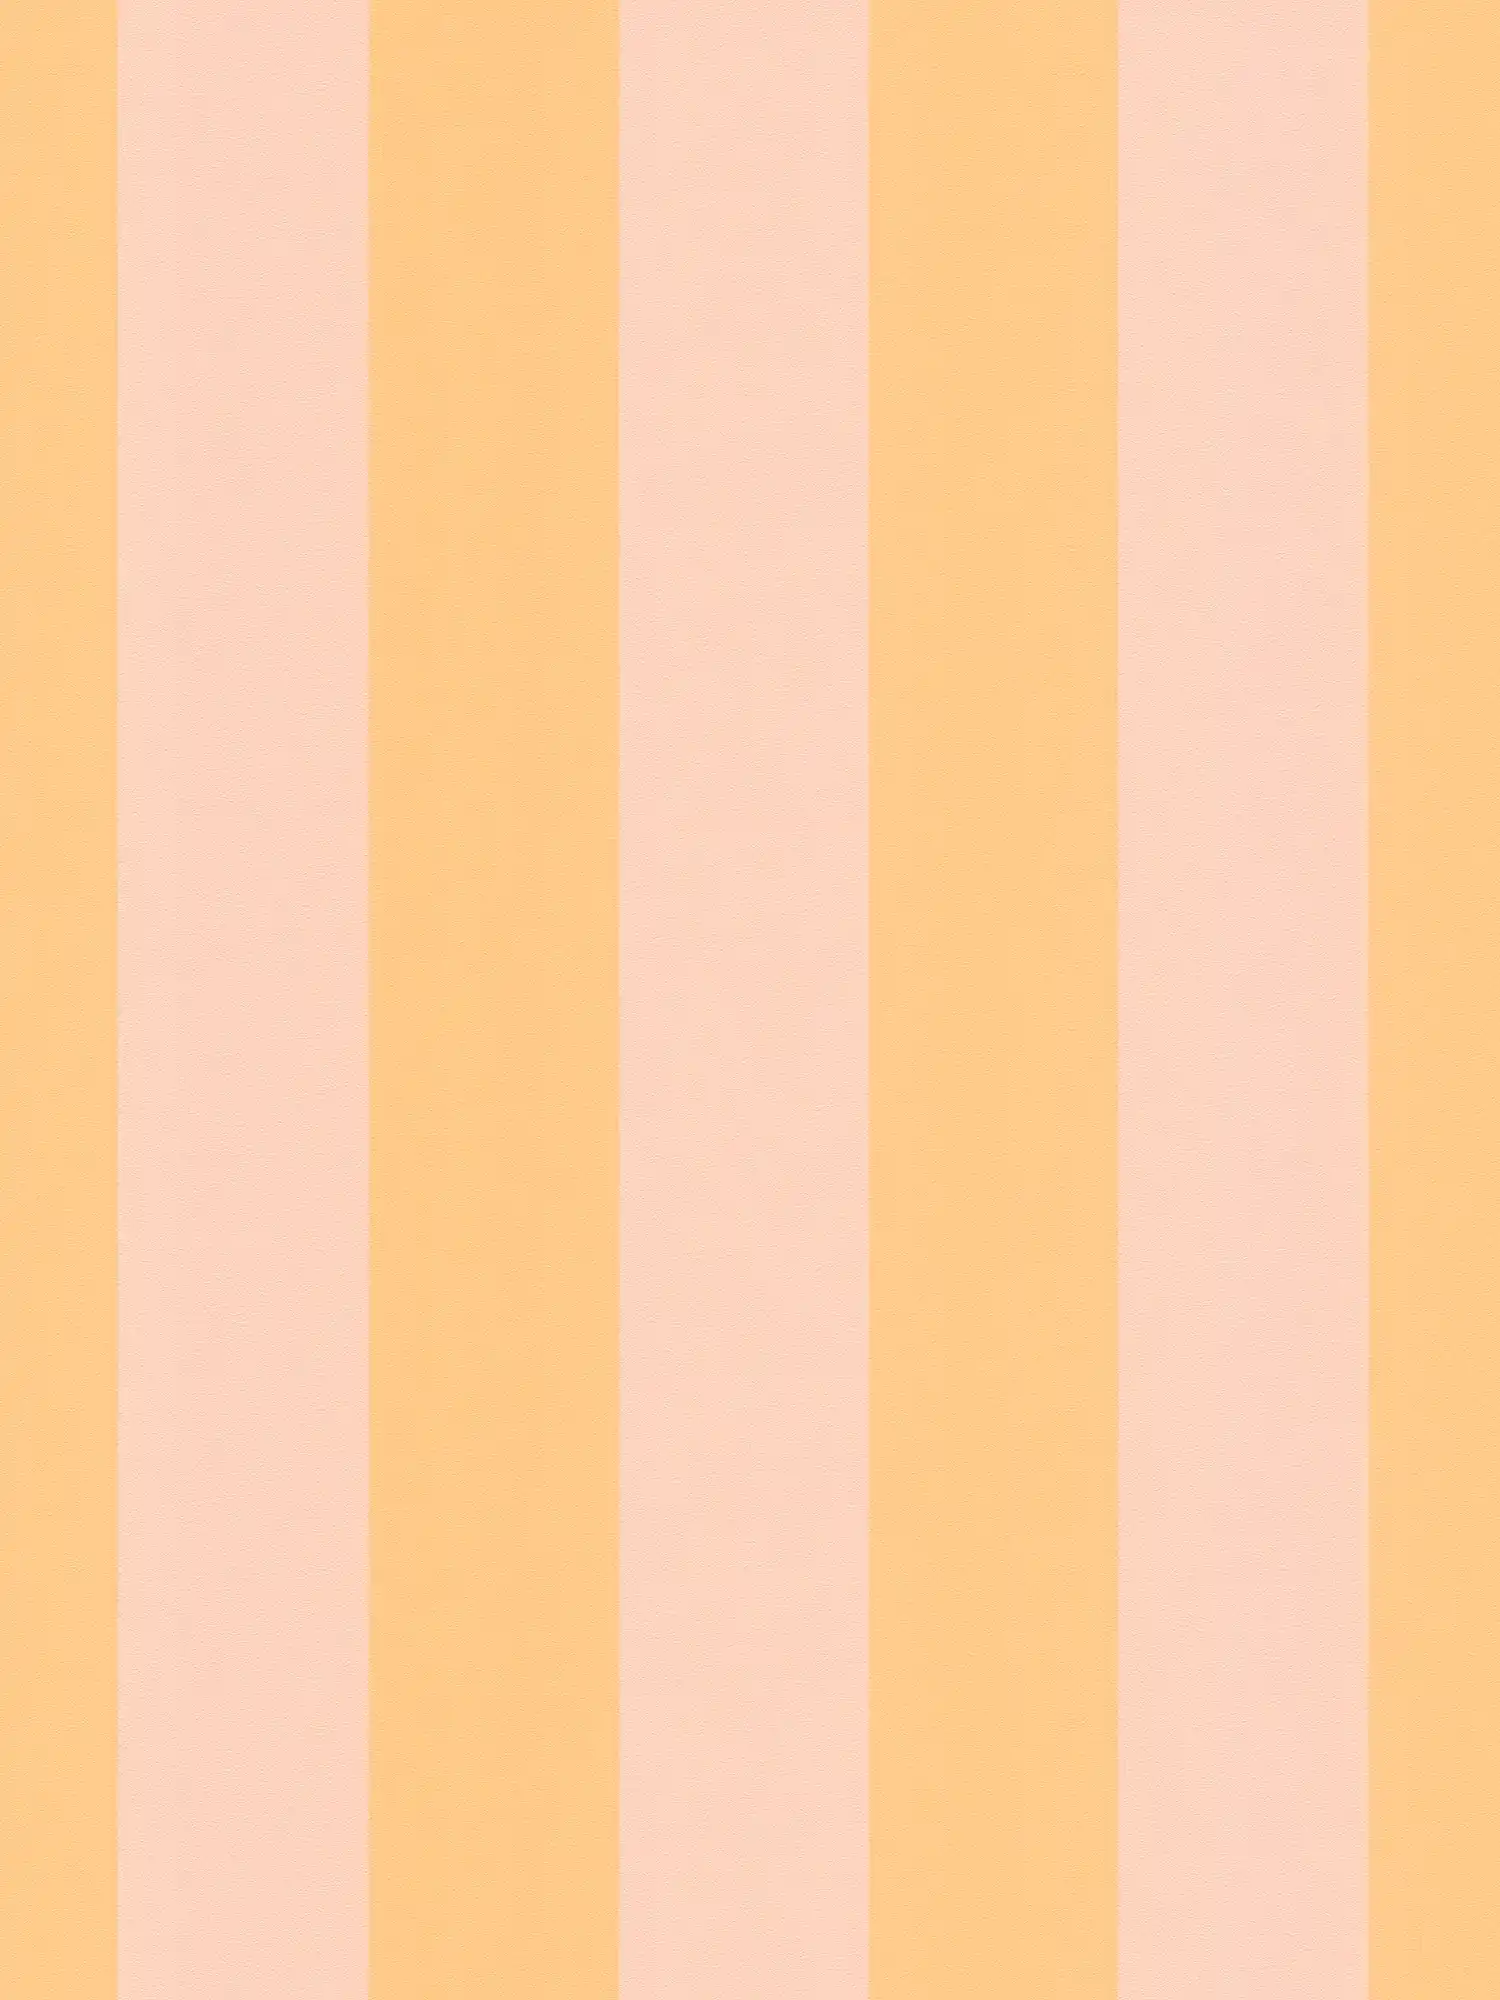 Vliesbehang met blokstrepen in zachte tinten - oranje, roze
